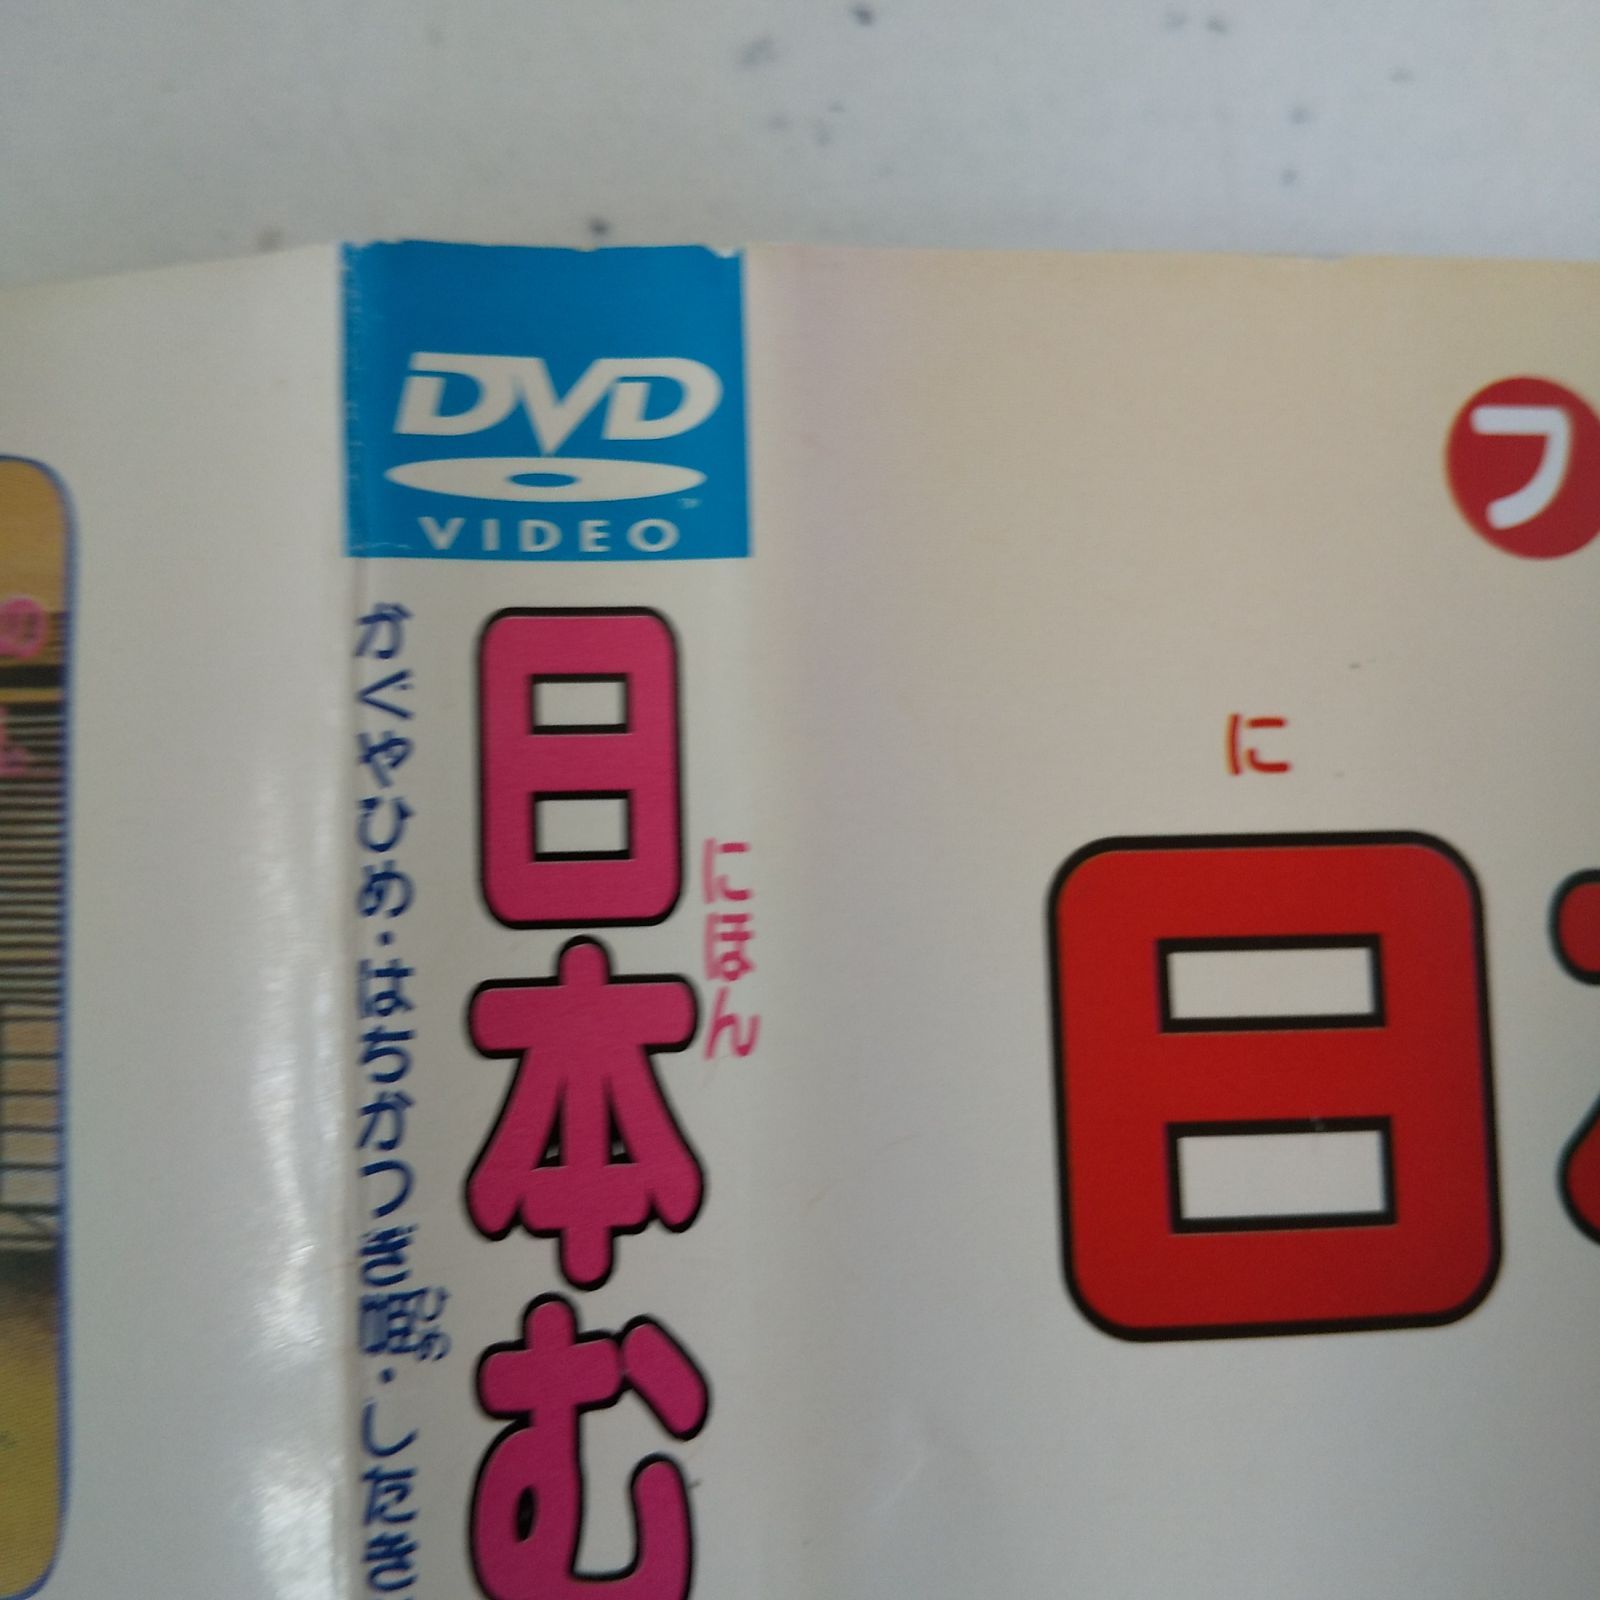 日本むかし話 2巻 レンタル落ち 中古 DVD ケース付き - メルカリ